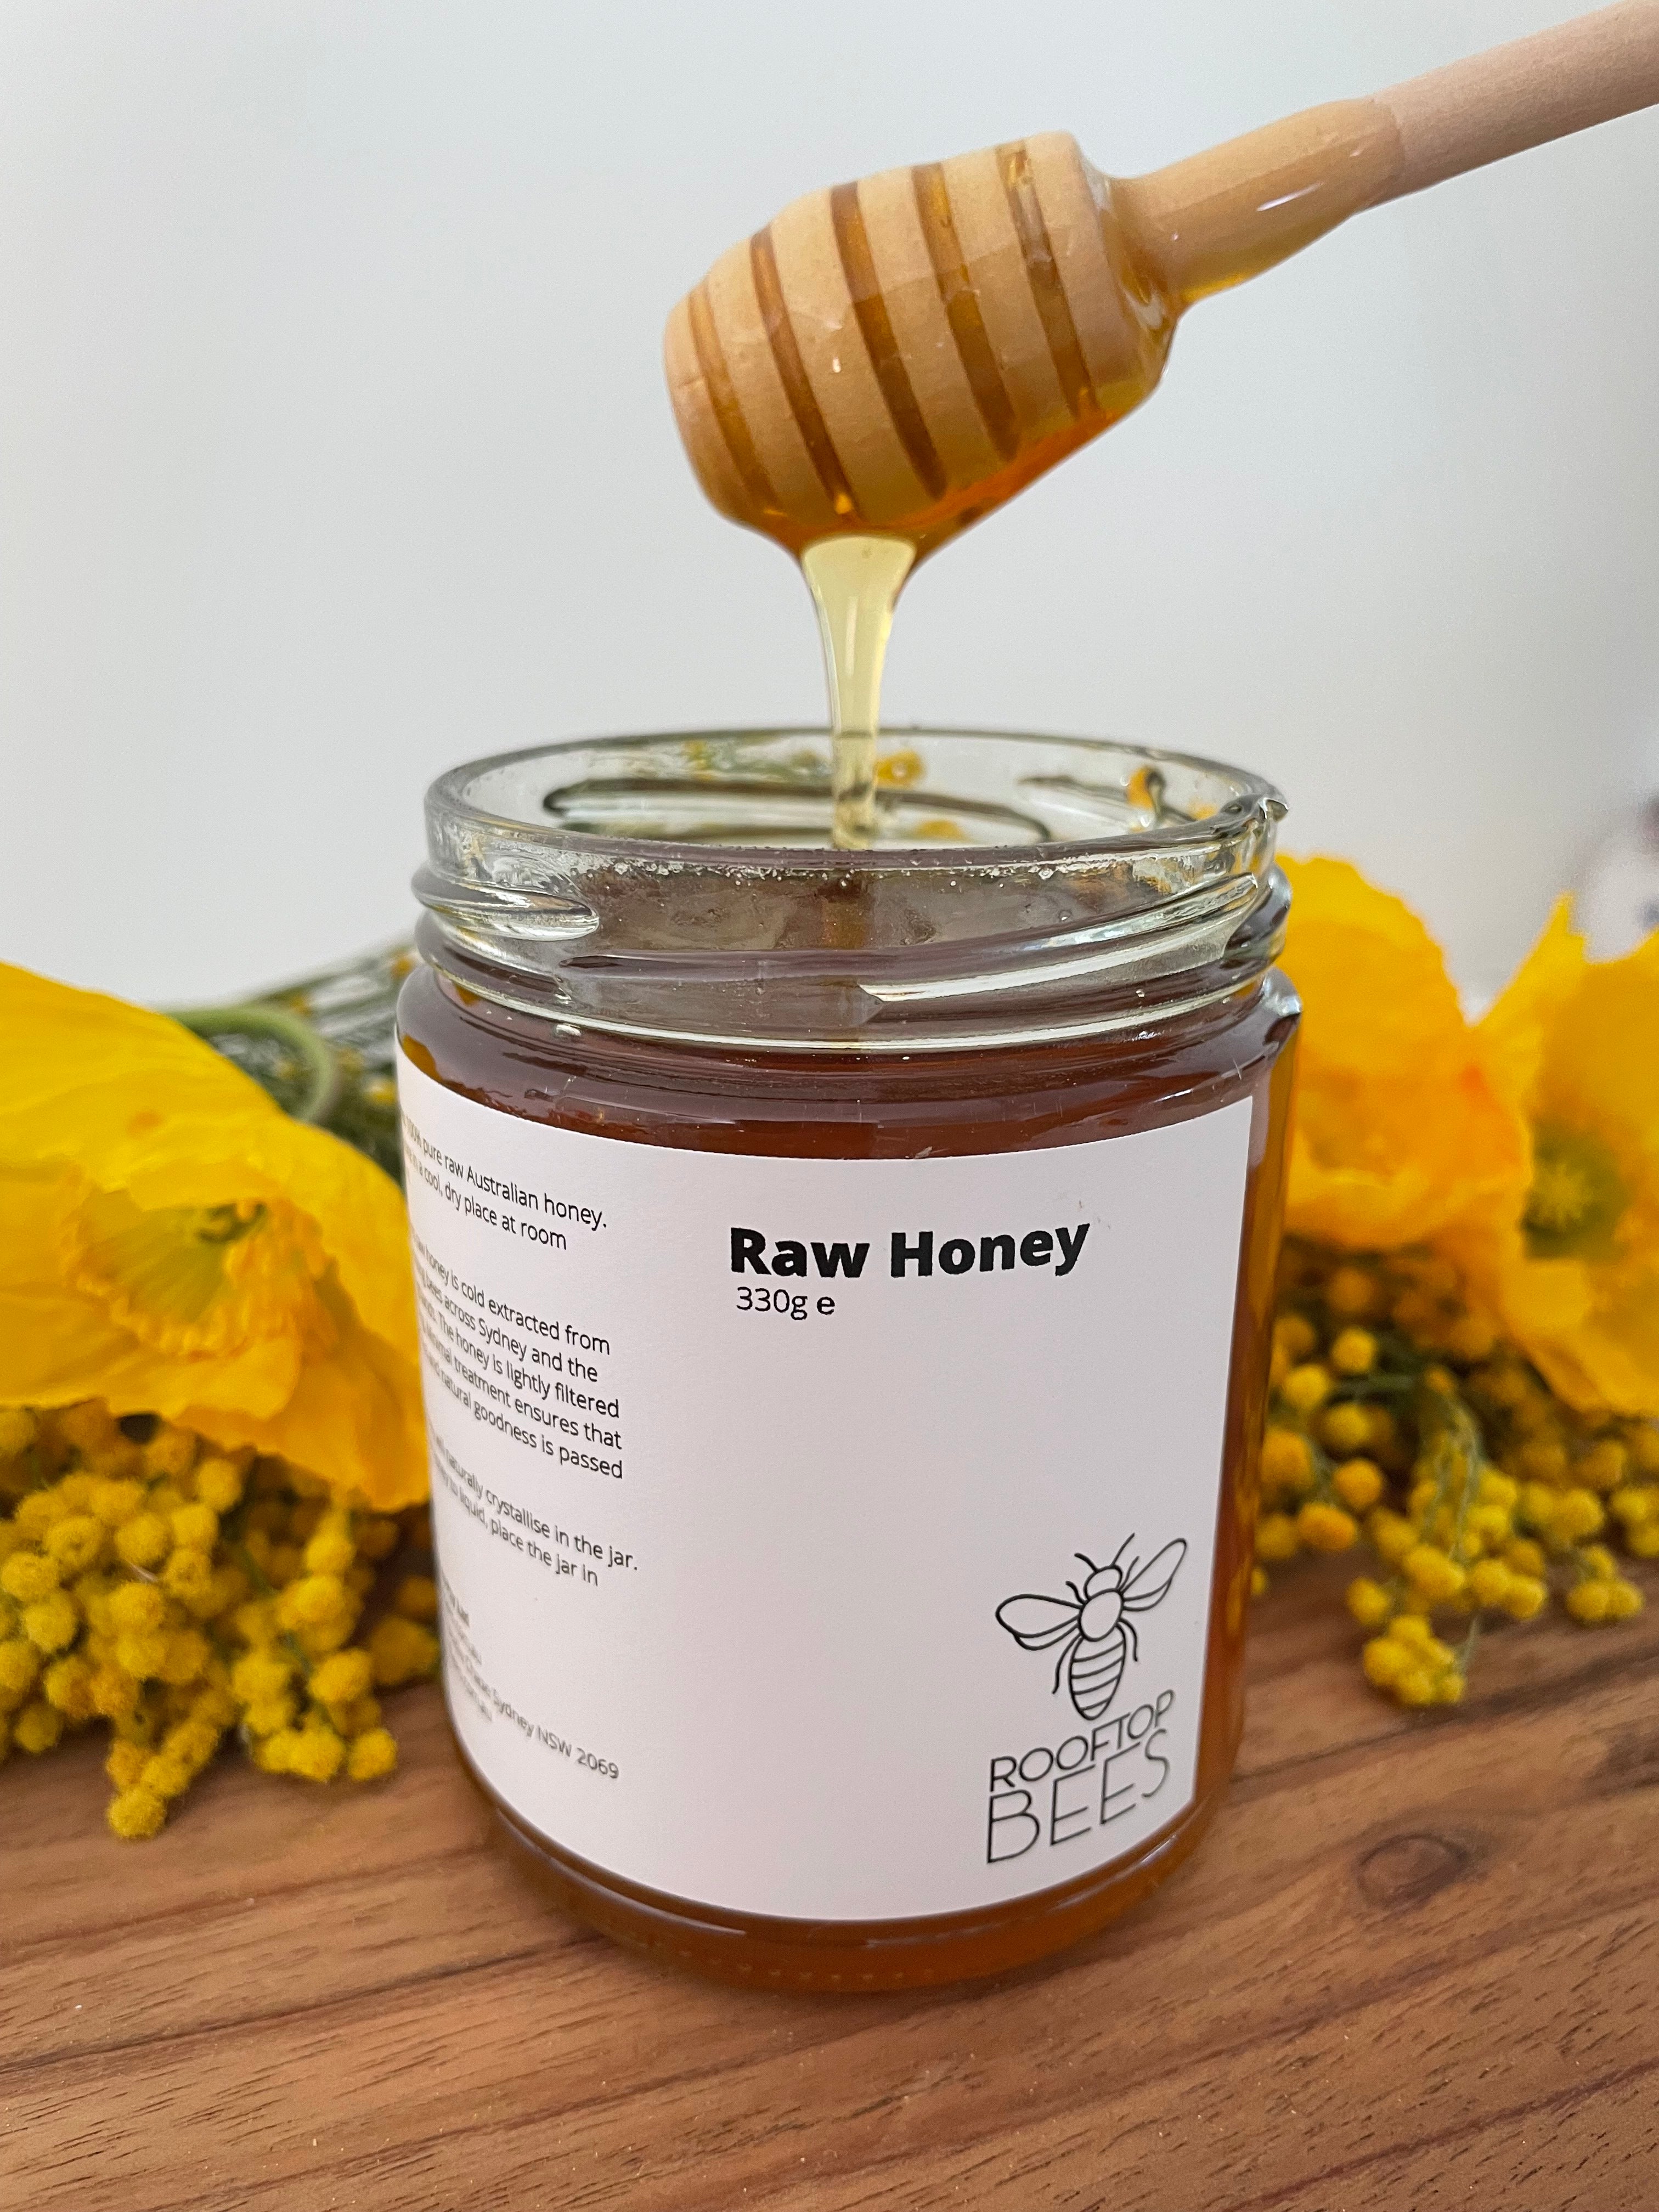 Northern Beaches NSW Raw Honey